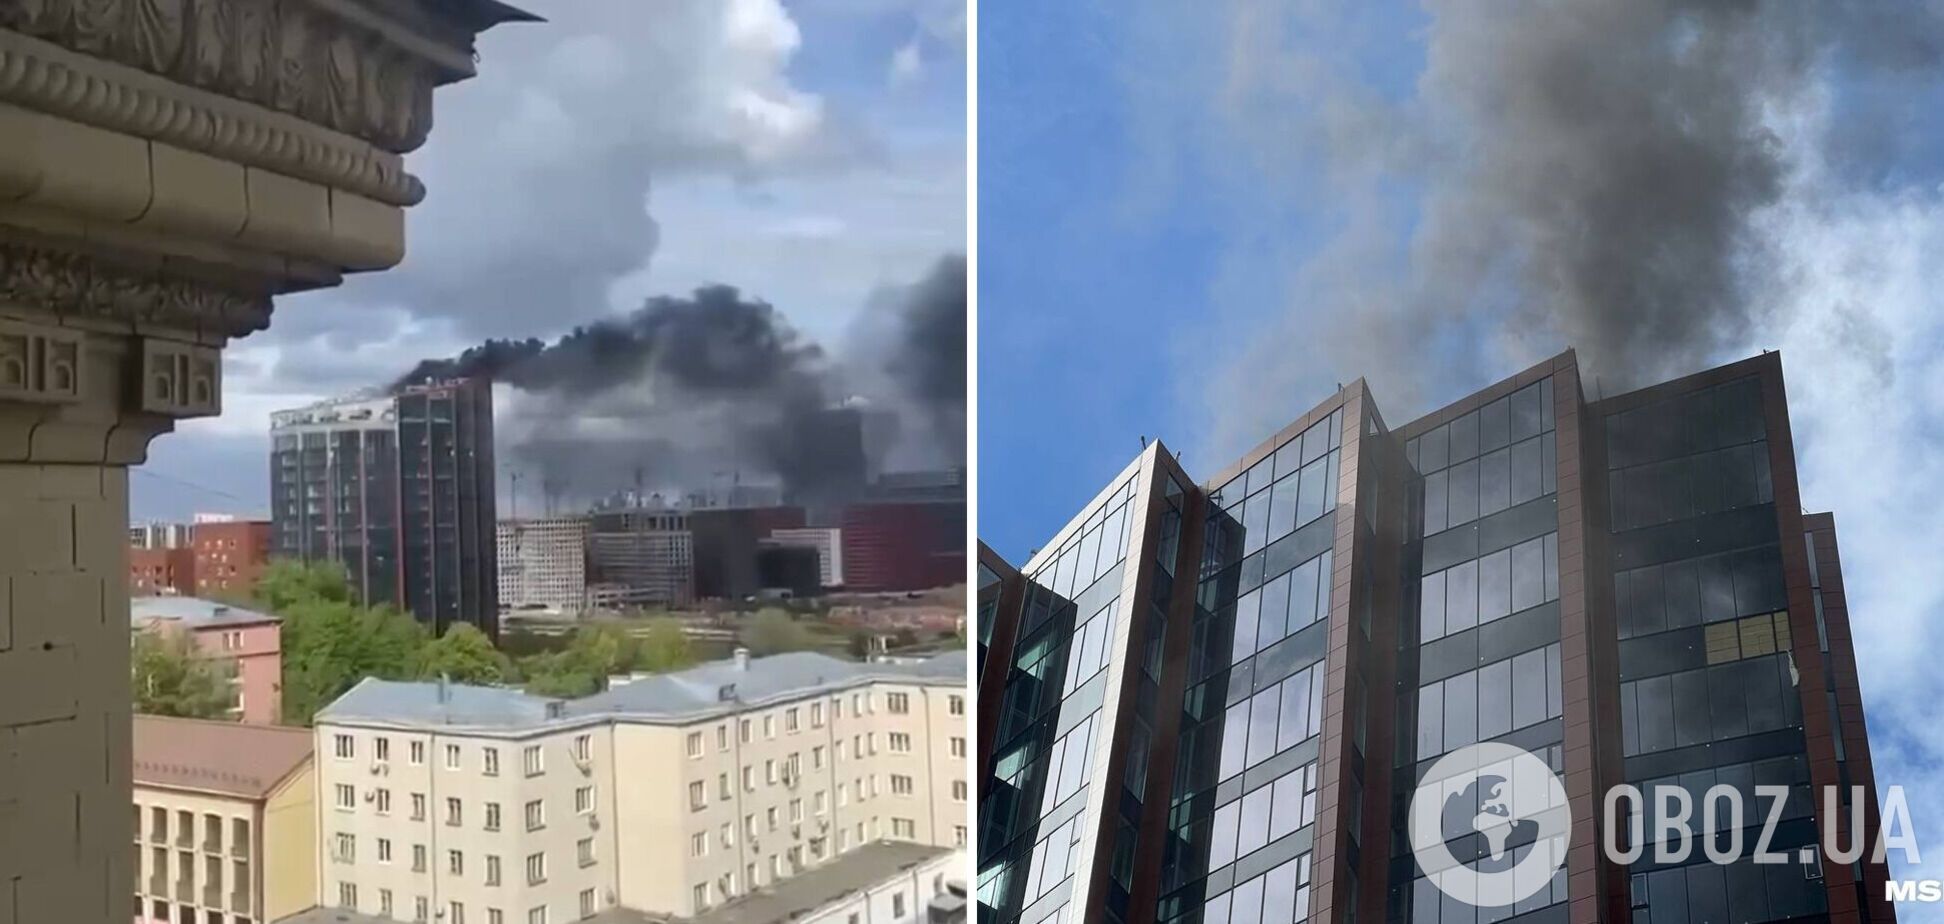 В Москве вспыхнул бизнес-центр DM-Tower, валит черный дым. Видео